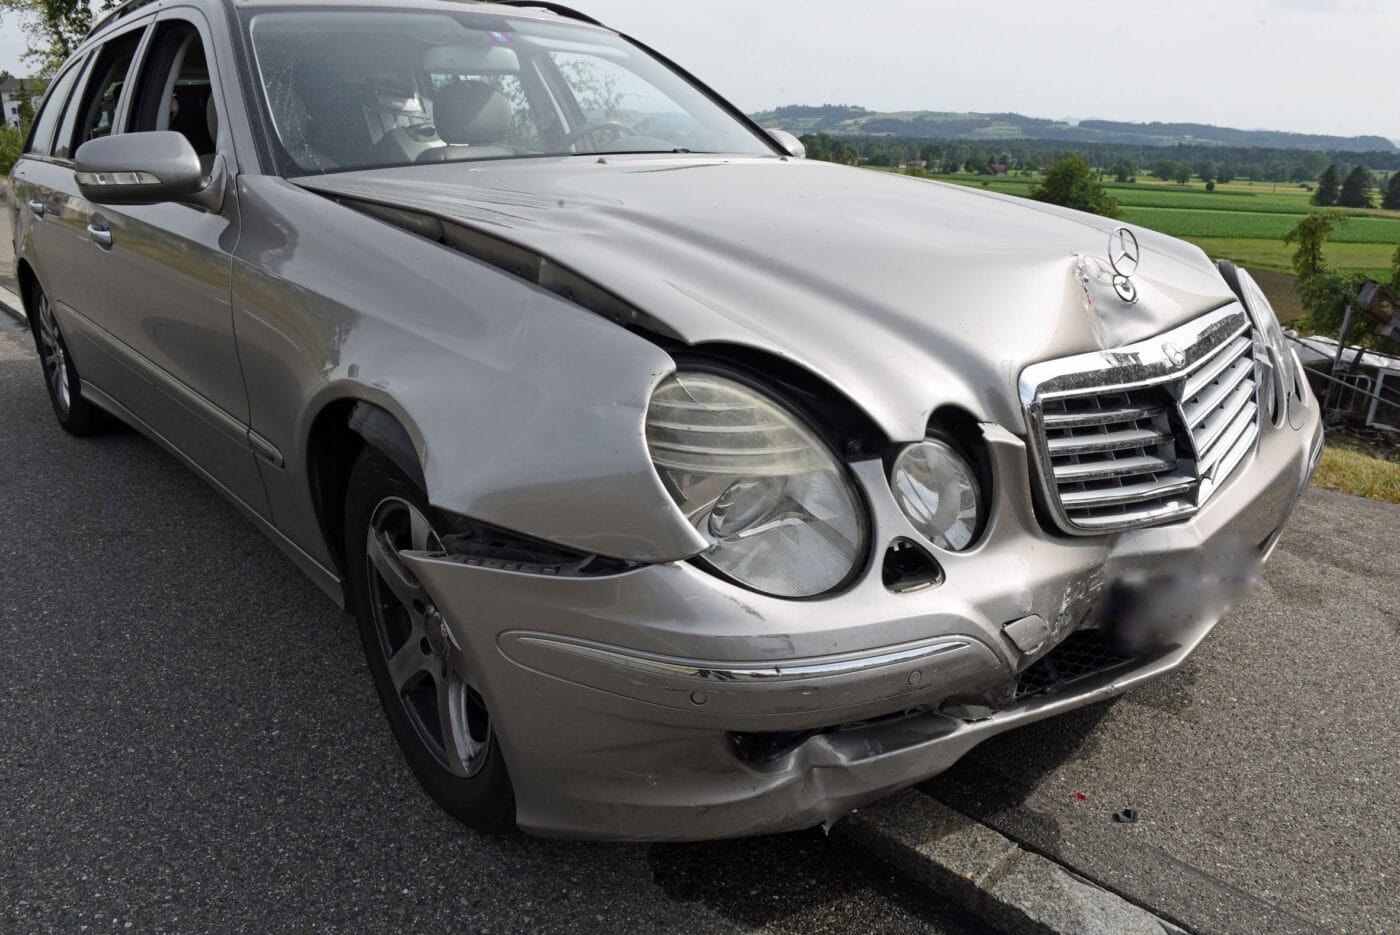 Auffahrunfall zwischen zwei Autos – eine Person erheblich verletzt